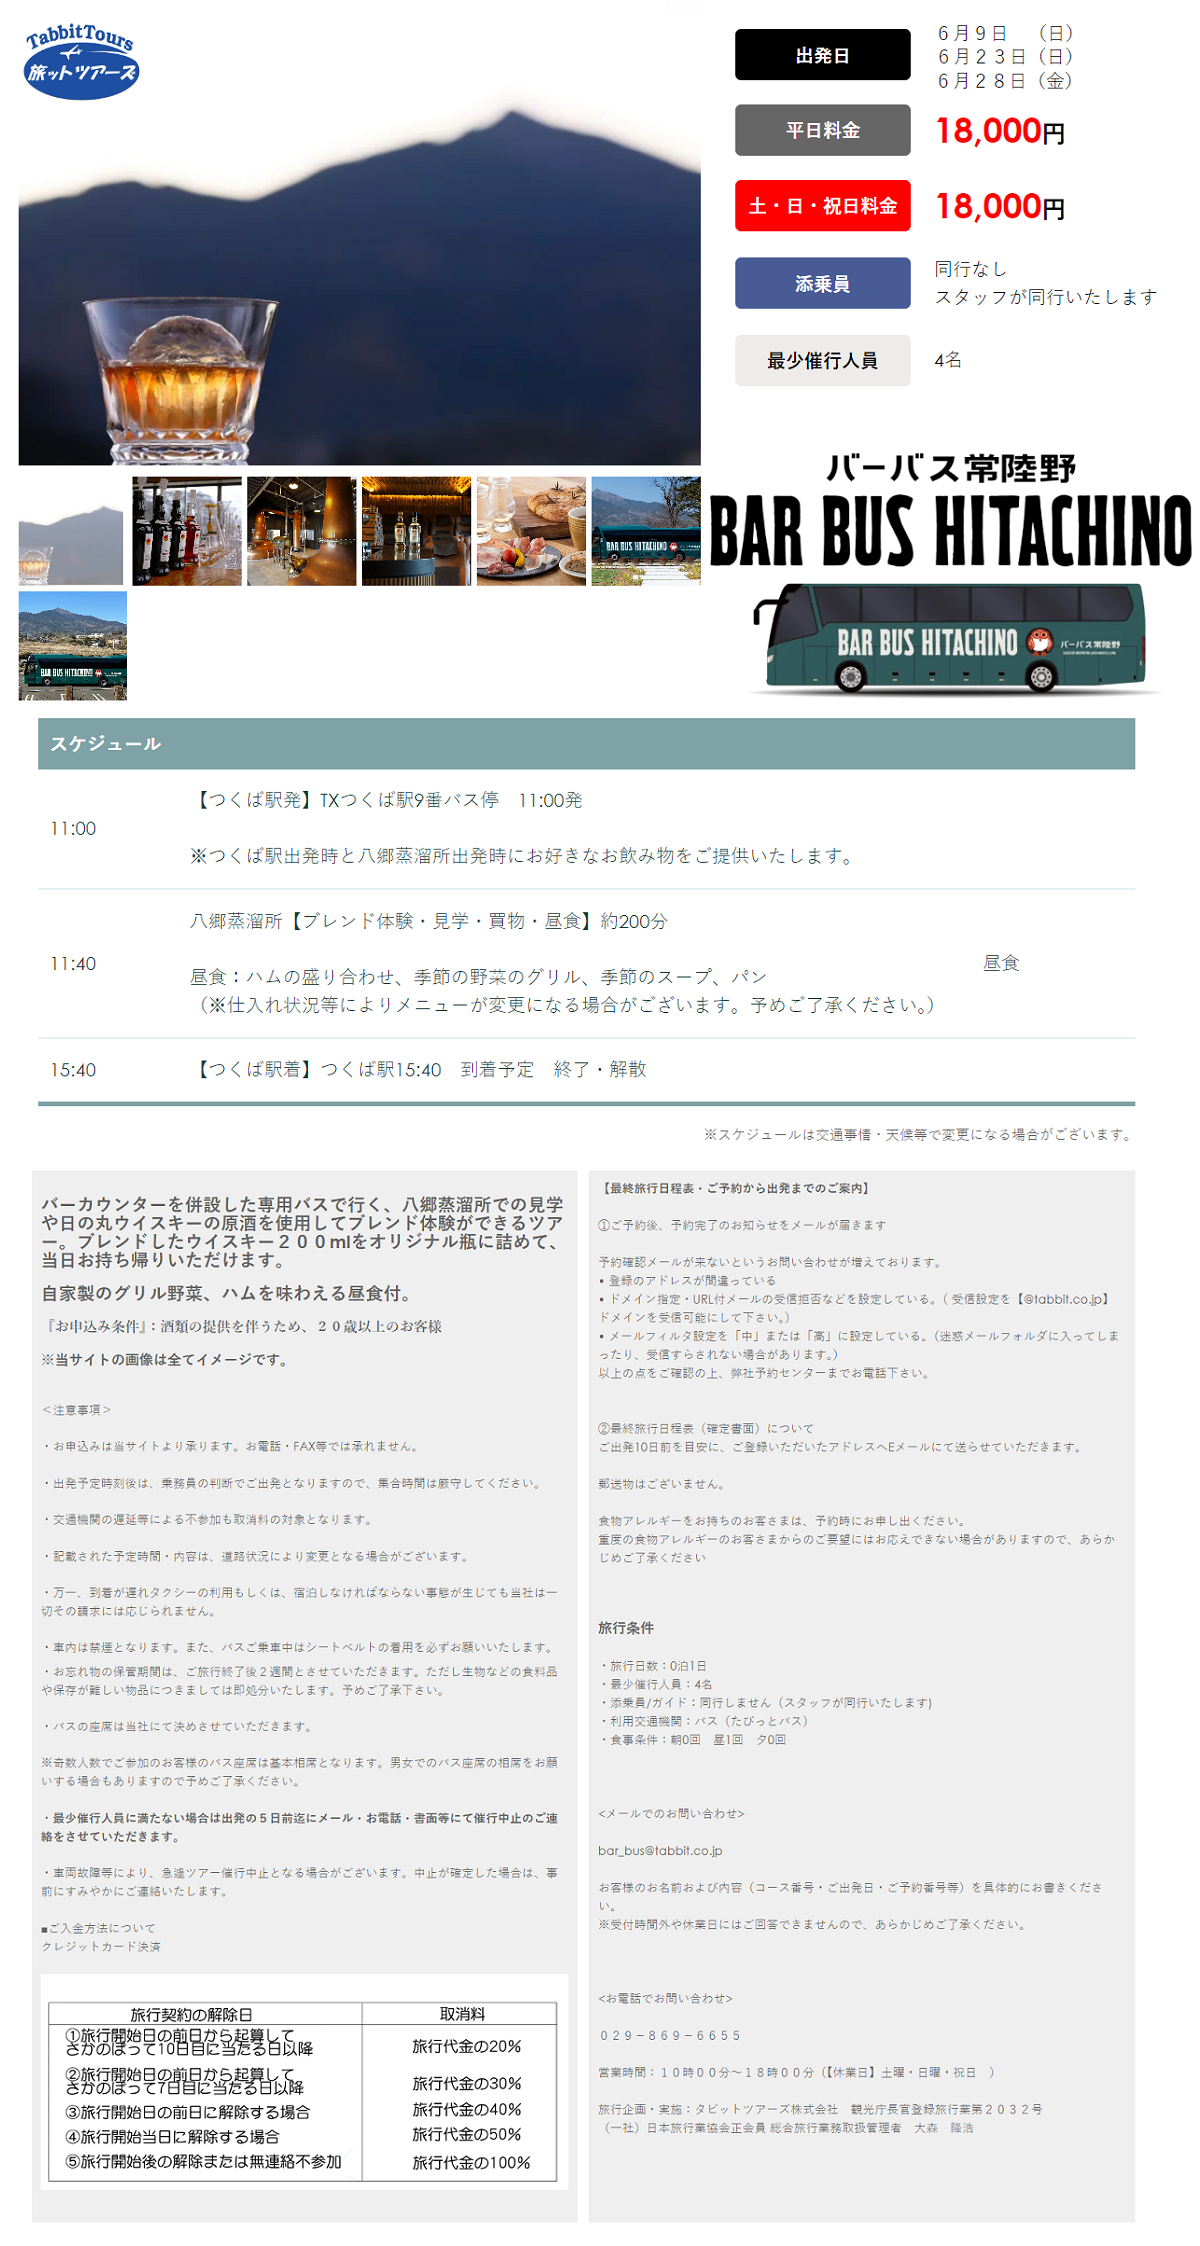 bar_bas_hitachino_tsukuba.png